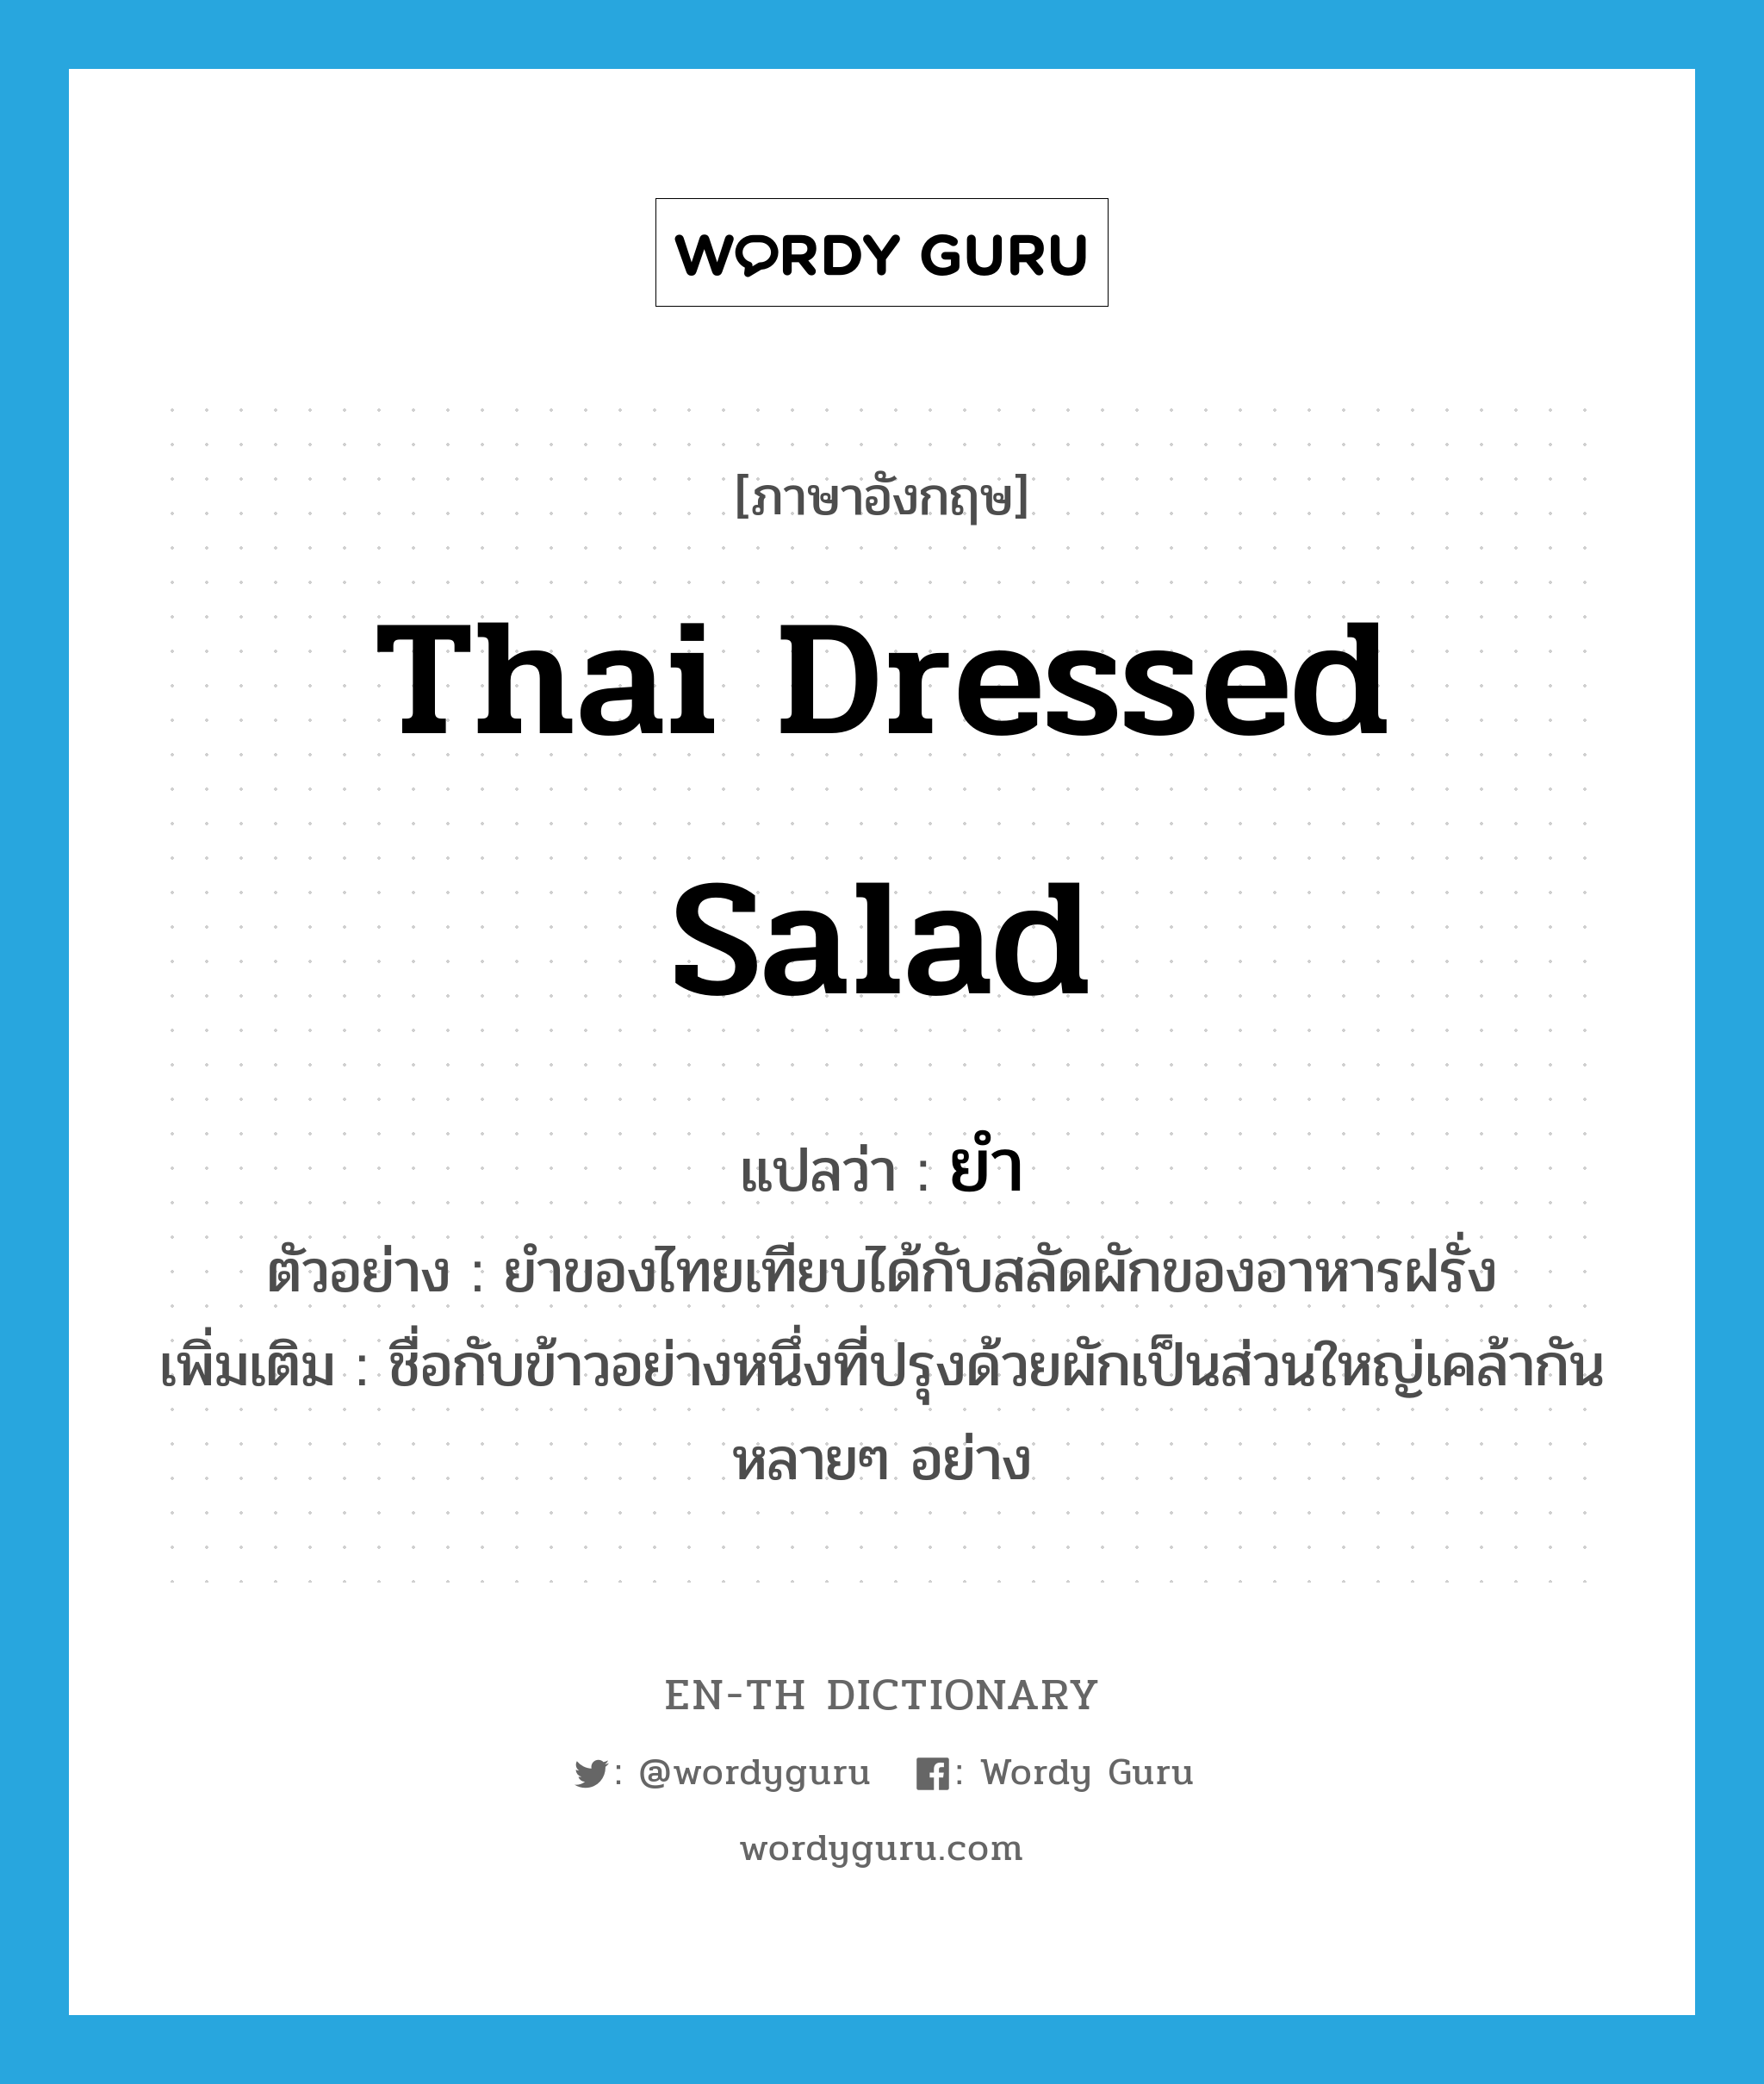 Thai dressed salad แปลว่า?, คำศัพท์ภาษาอังกฤษ Thai dressed salad แปลว่า ยำ ประเภท N ตัวอย่าง ยำของไทยเทียบได้กับสลัดผักของอาหารฝรั่ง เพิ่มเติม ชื่อกับข้าวอย่างหนึ่งที่ปรุงด้วยผักเป็นส่วนใหญ่เคล้ากันหลายๆ อย่าง หมวด N